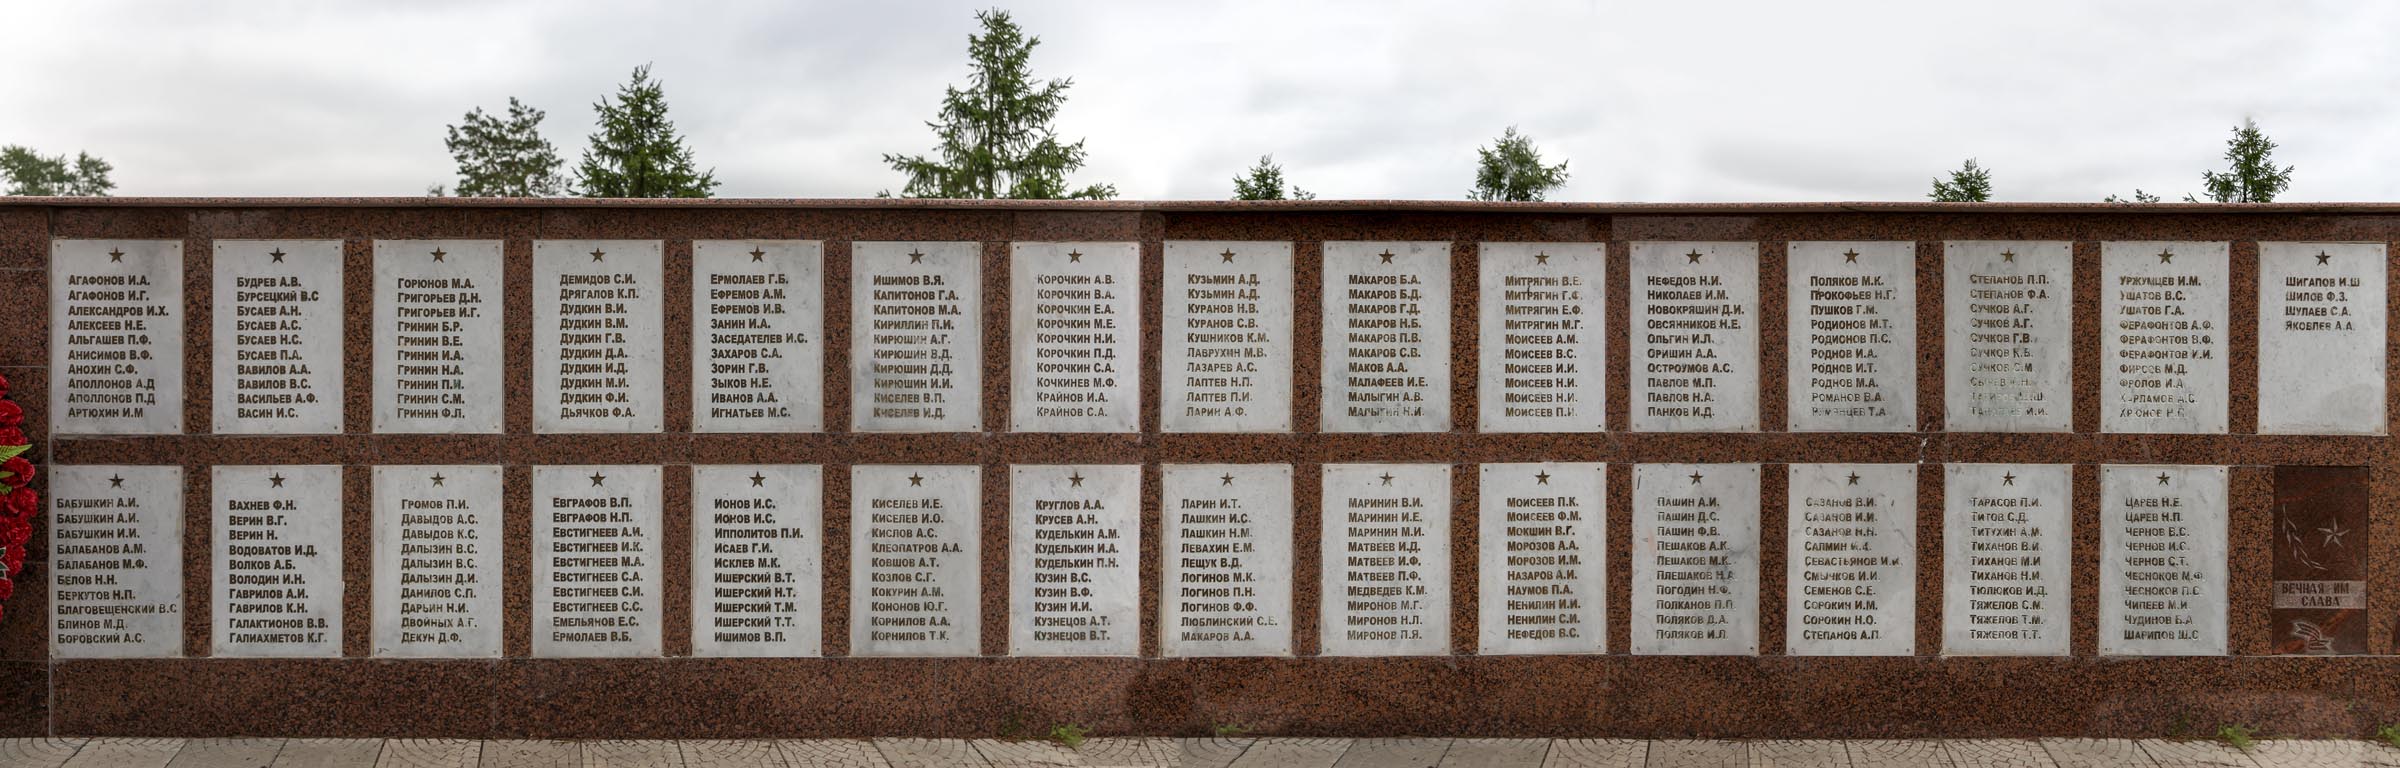 Списки погибших воинов